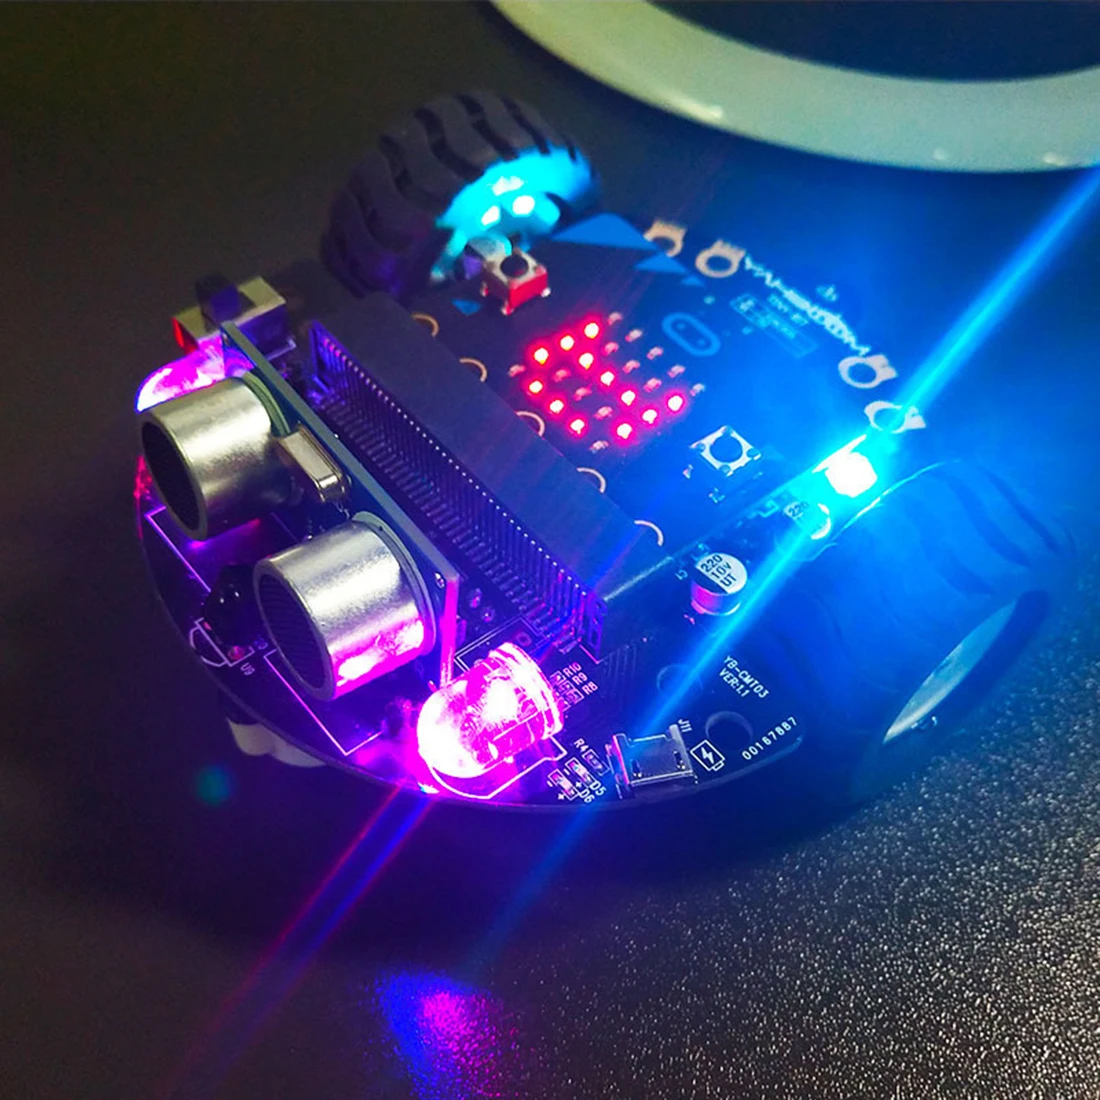 DIY избегание препятствий умный программируемый робот автомобиль обучающий комплект без материнской платы для микро: бит подарок для детей